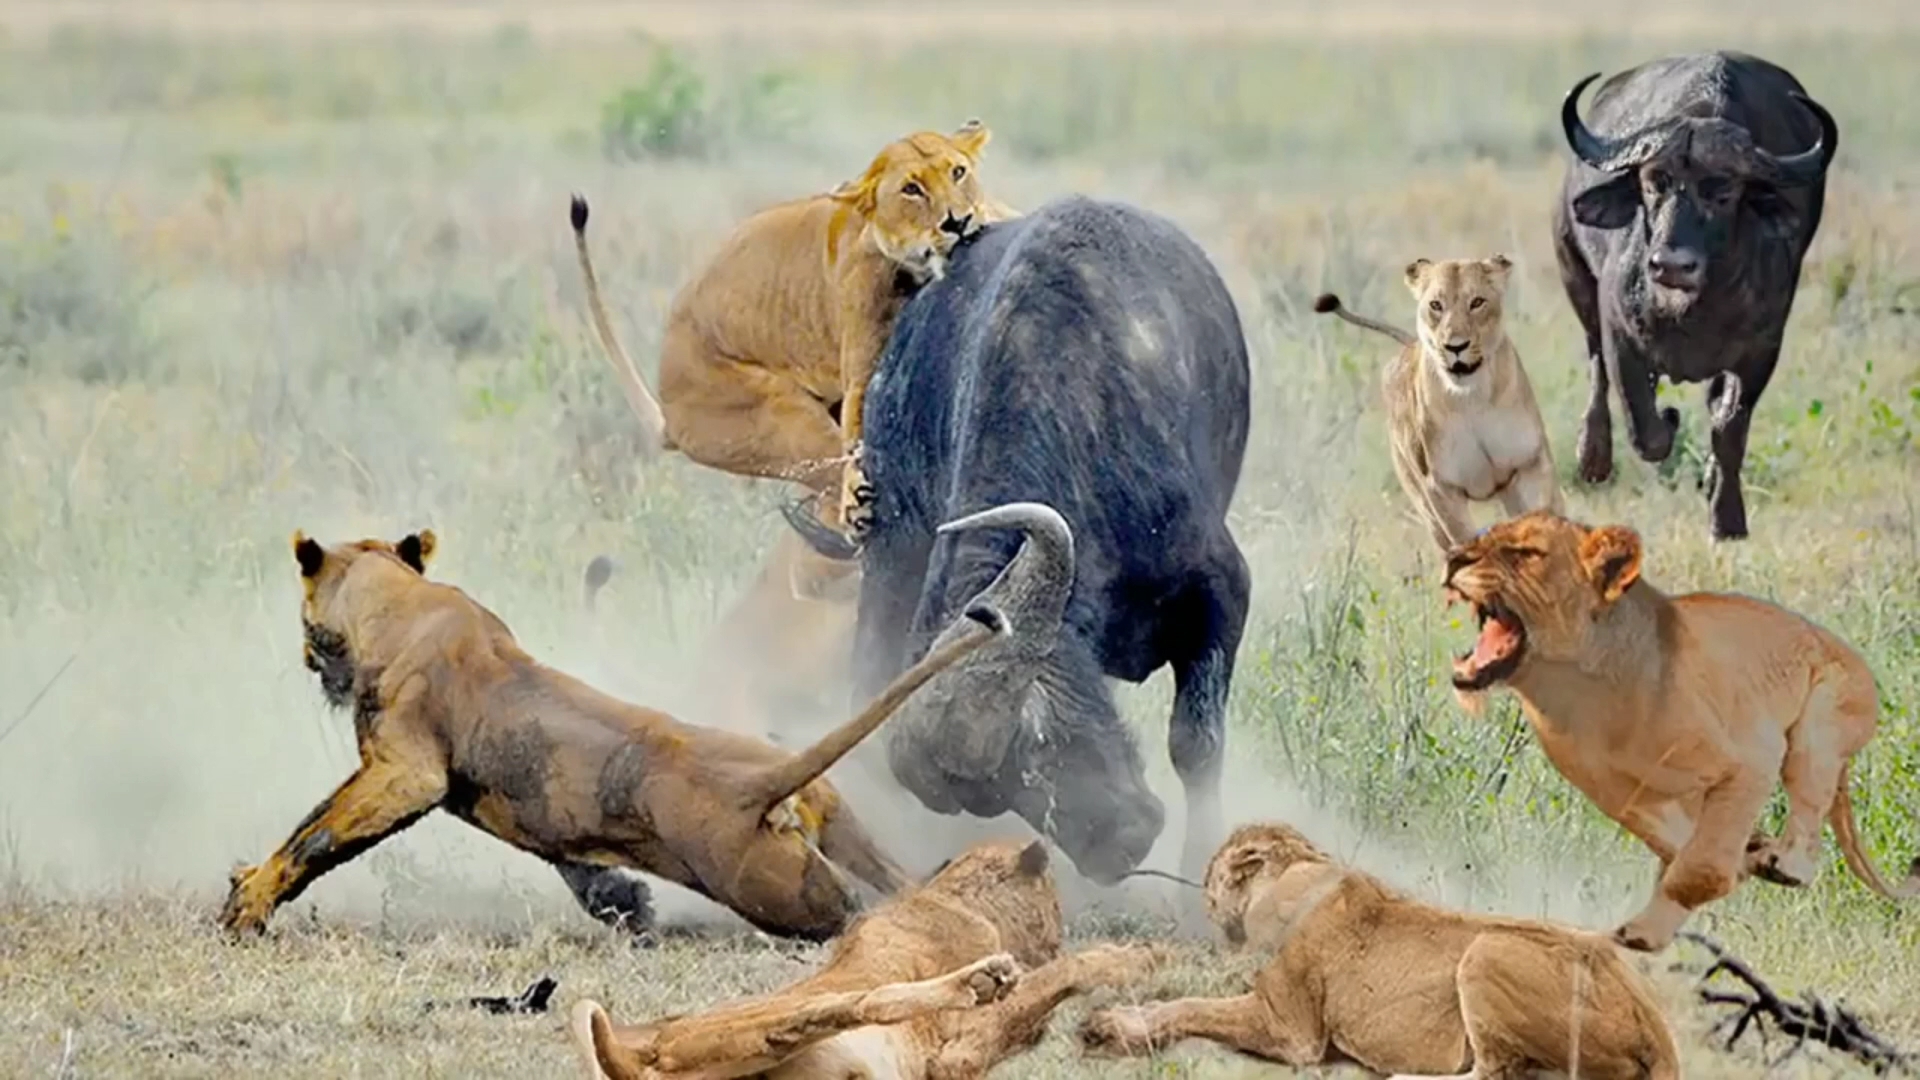 野生动物捕猎混剪,狮子猎食